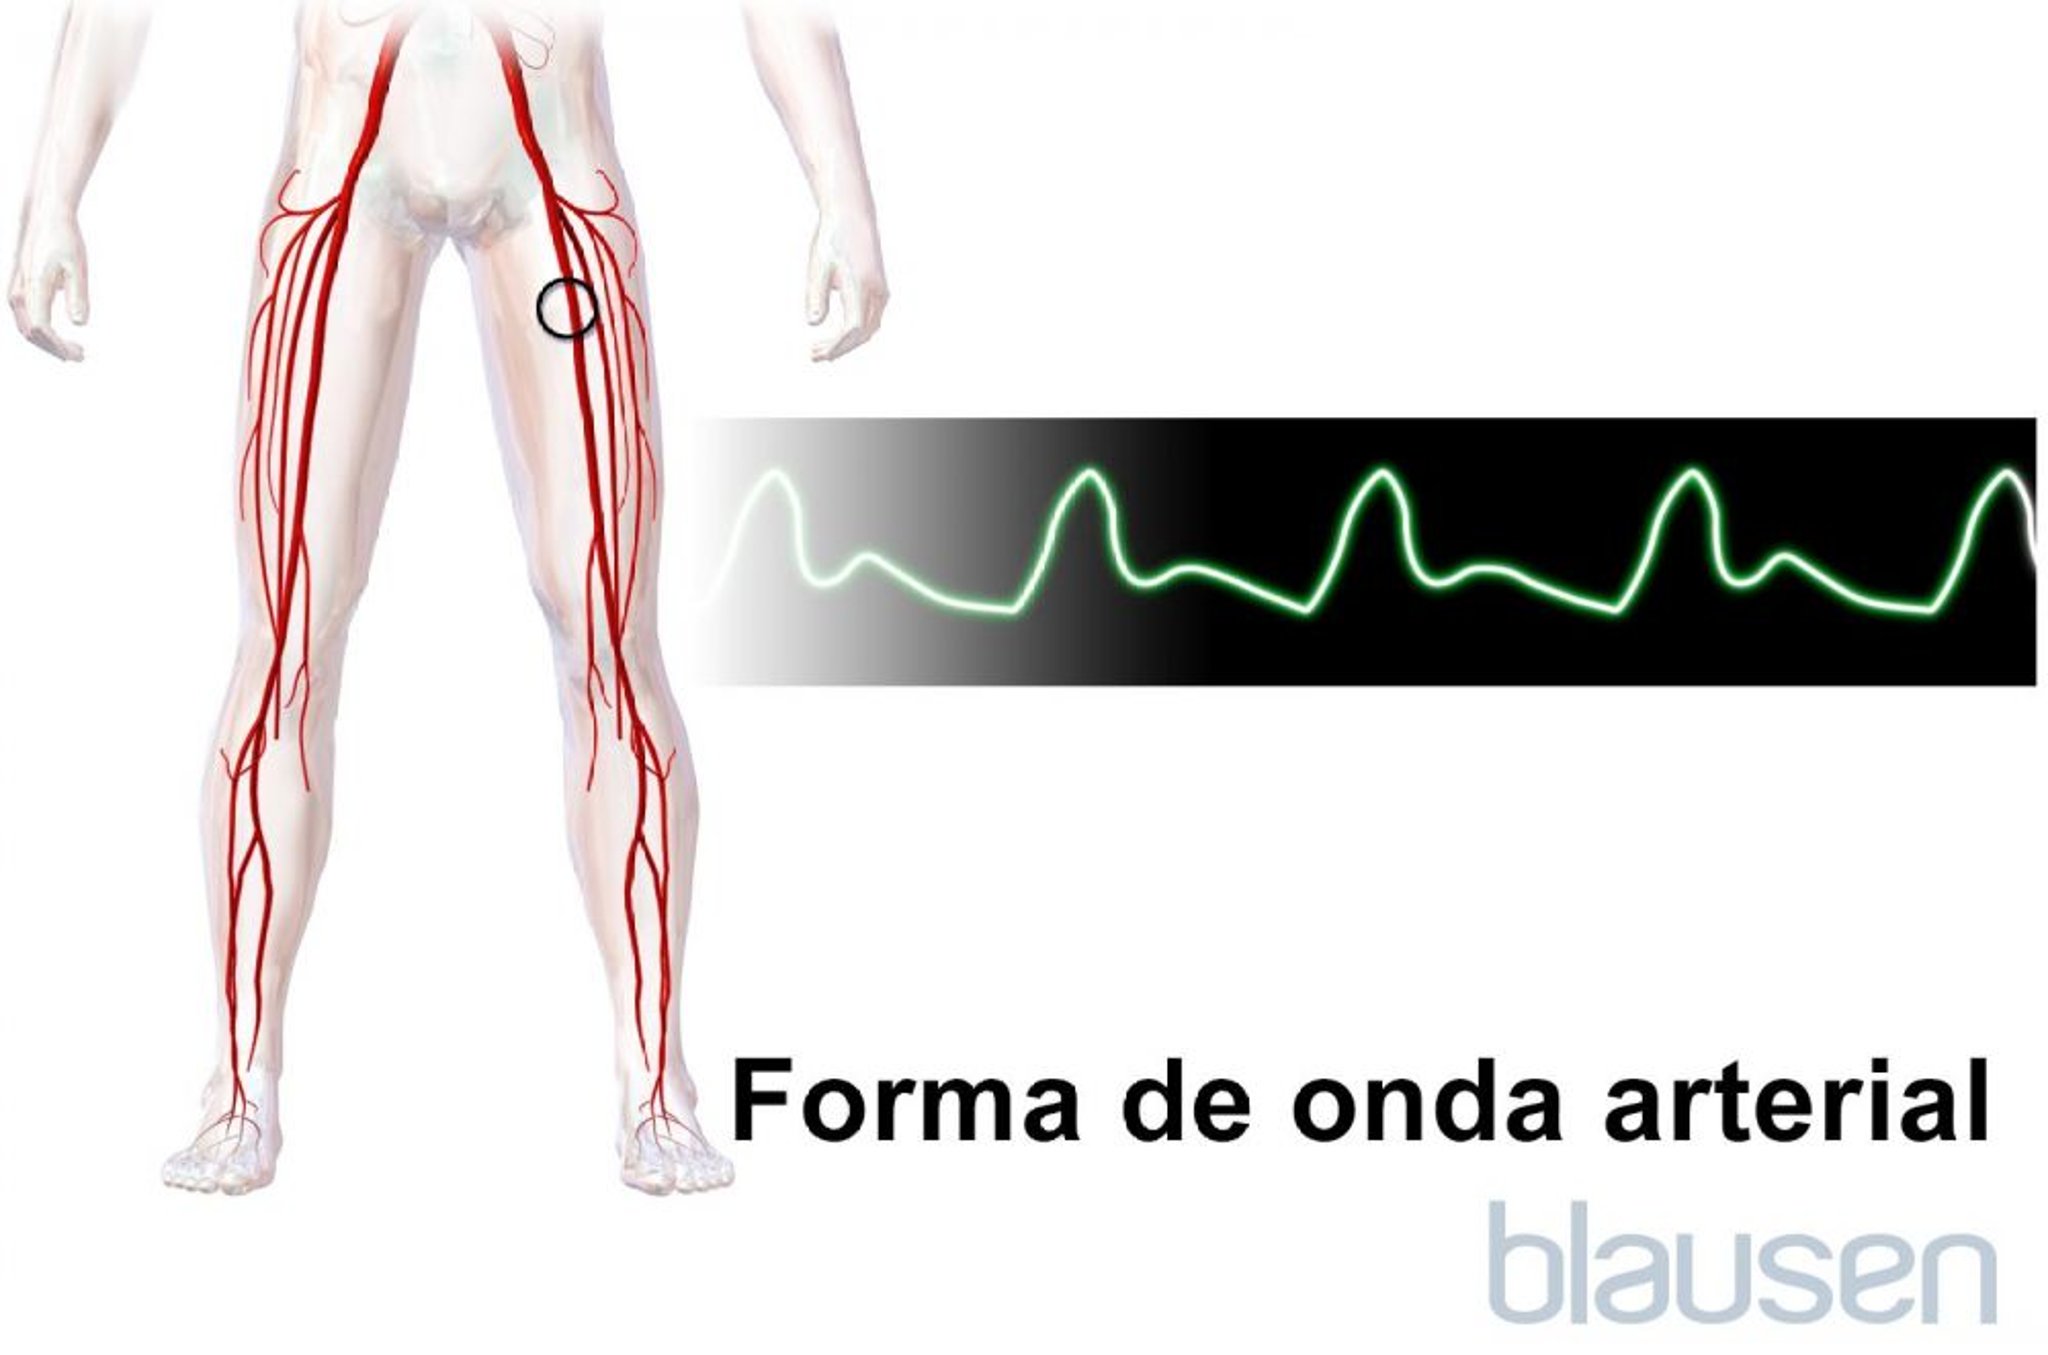 Forma de onda arterial